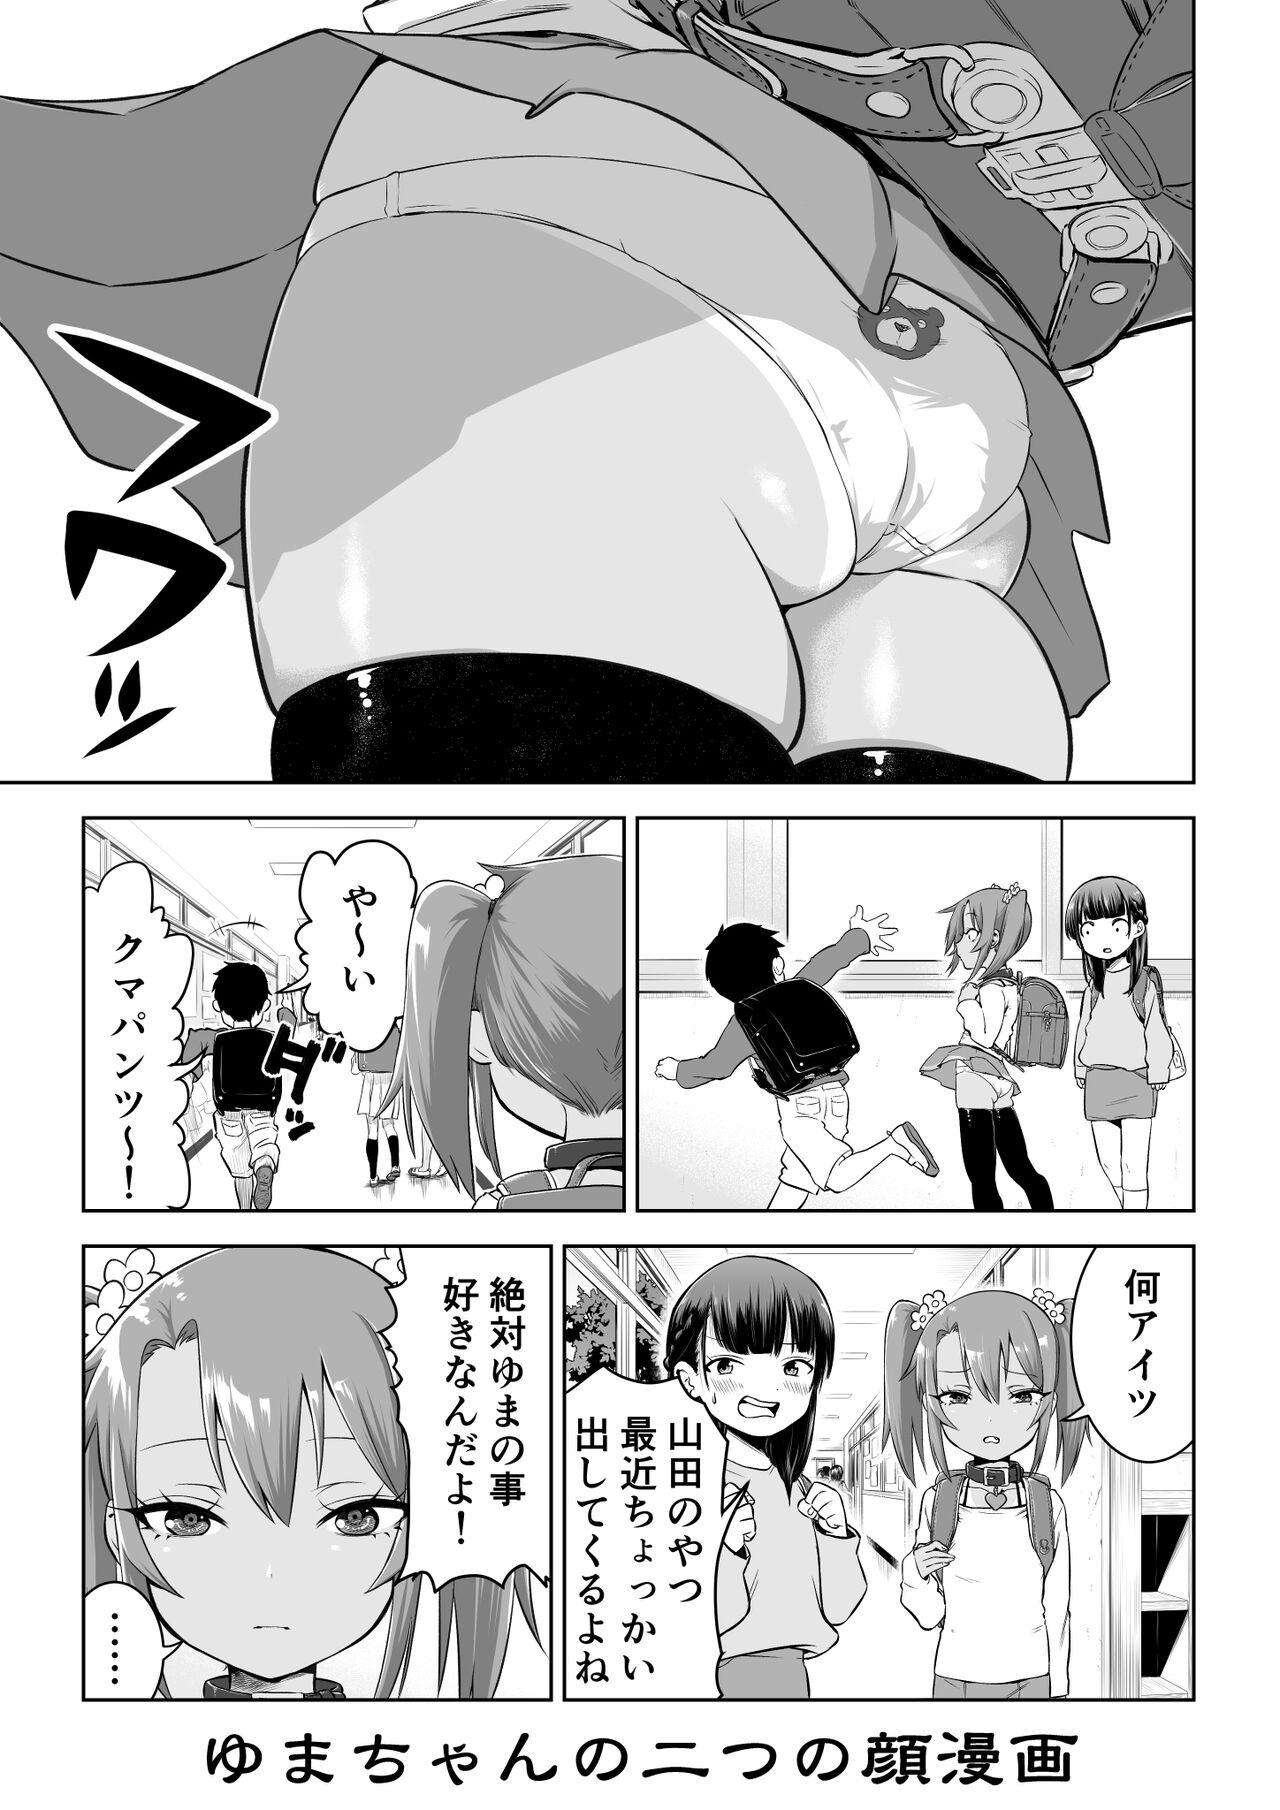 Bareback Yuma-chan's Web manga - Original Transexual - Page 9